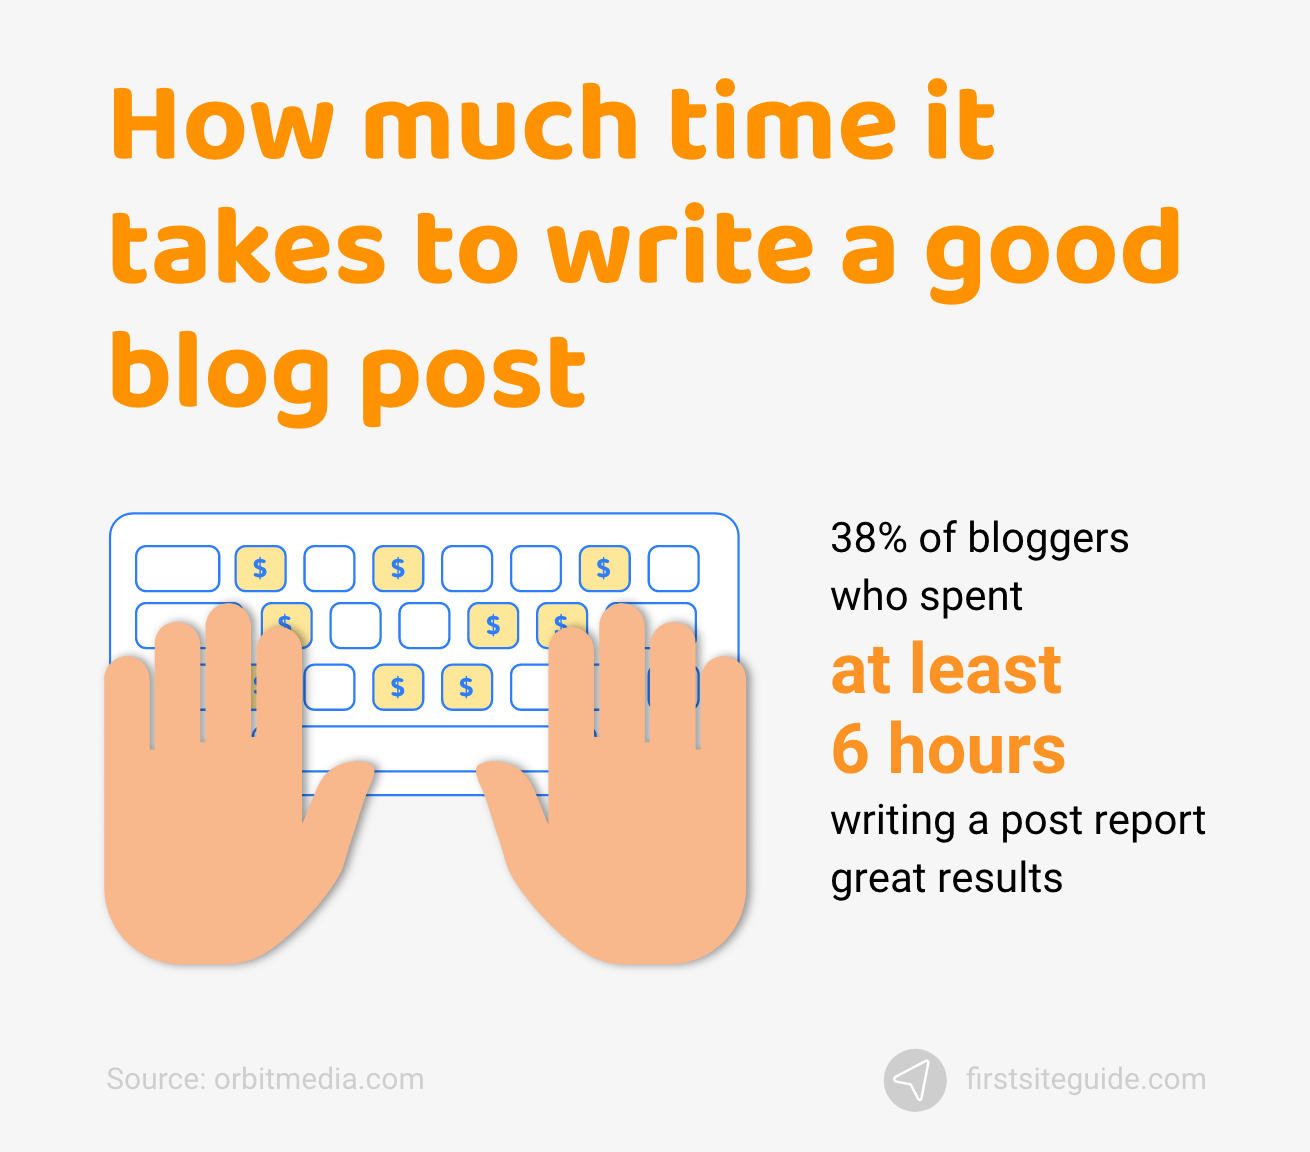 كم من الوقت يستغرق لكتابة منشور مدونة جيد